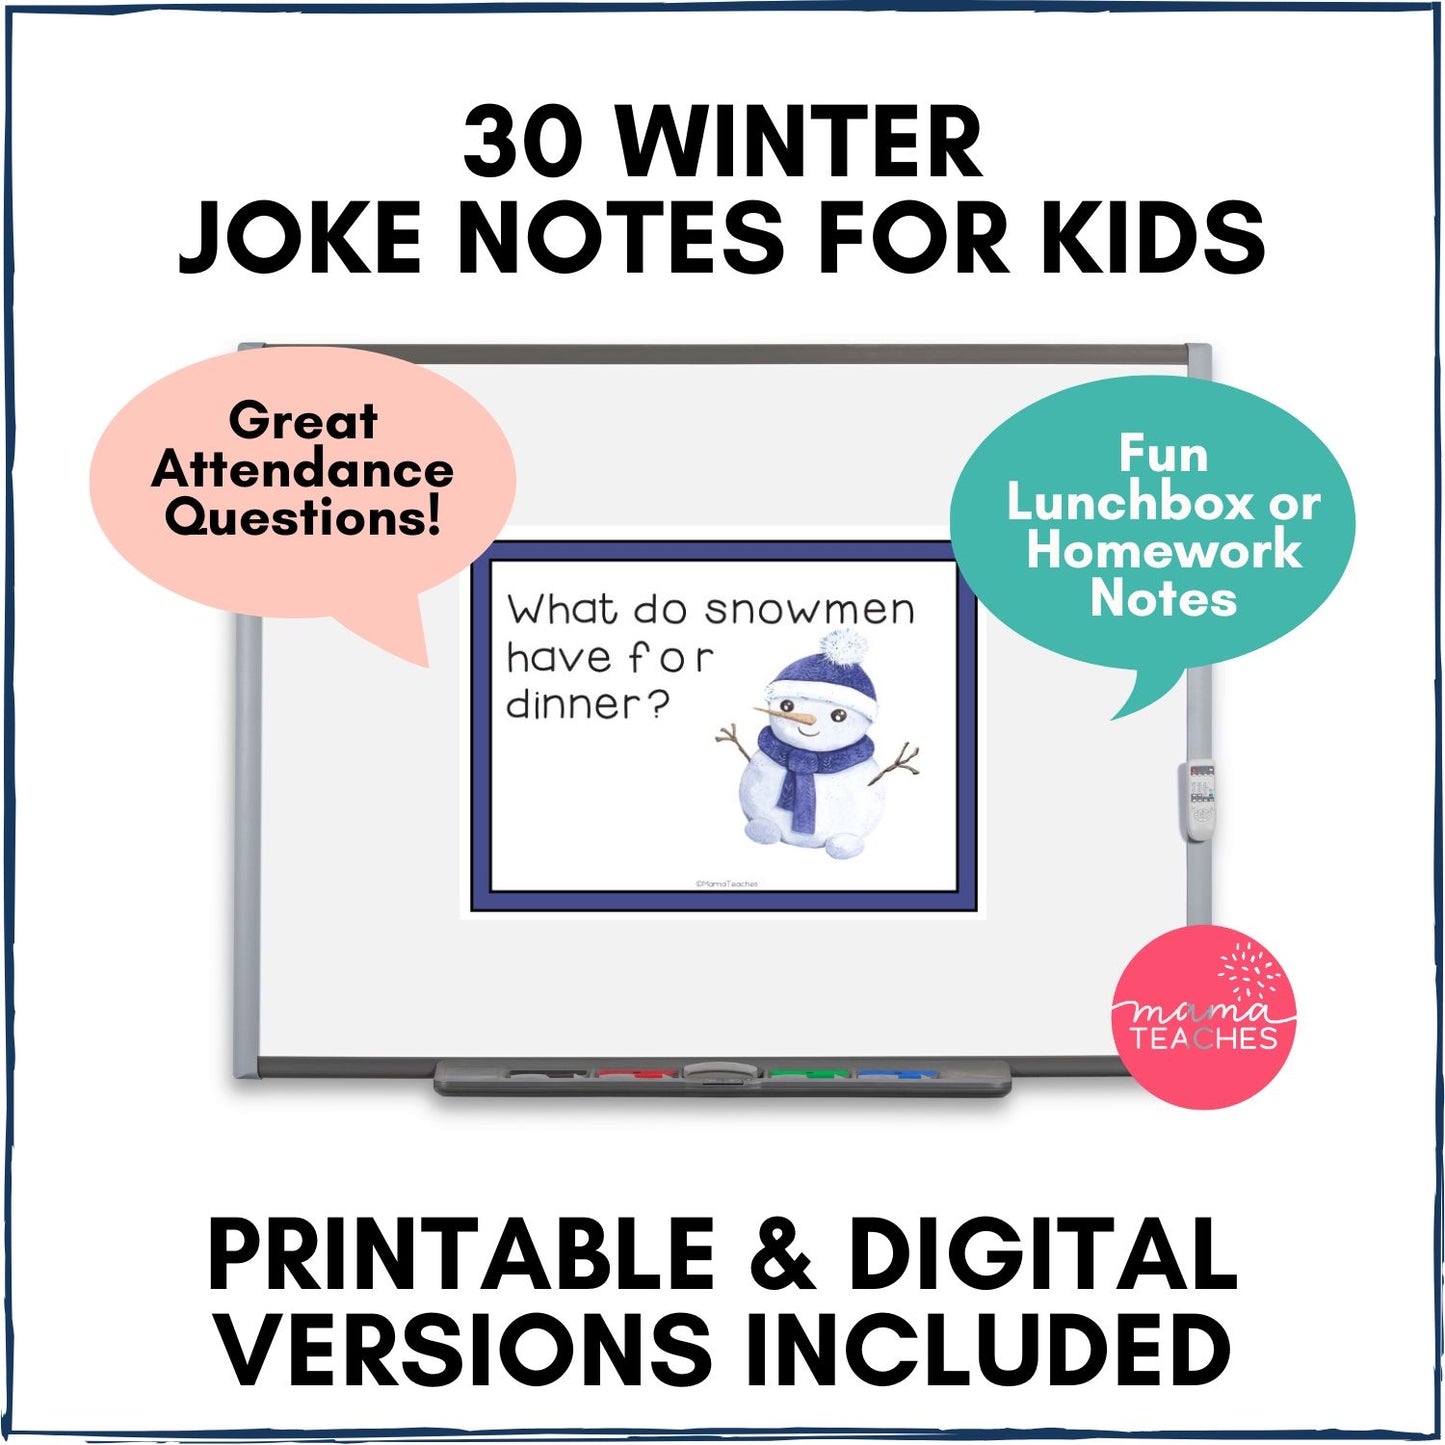 Jokes for Kids - Winter Jokes